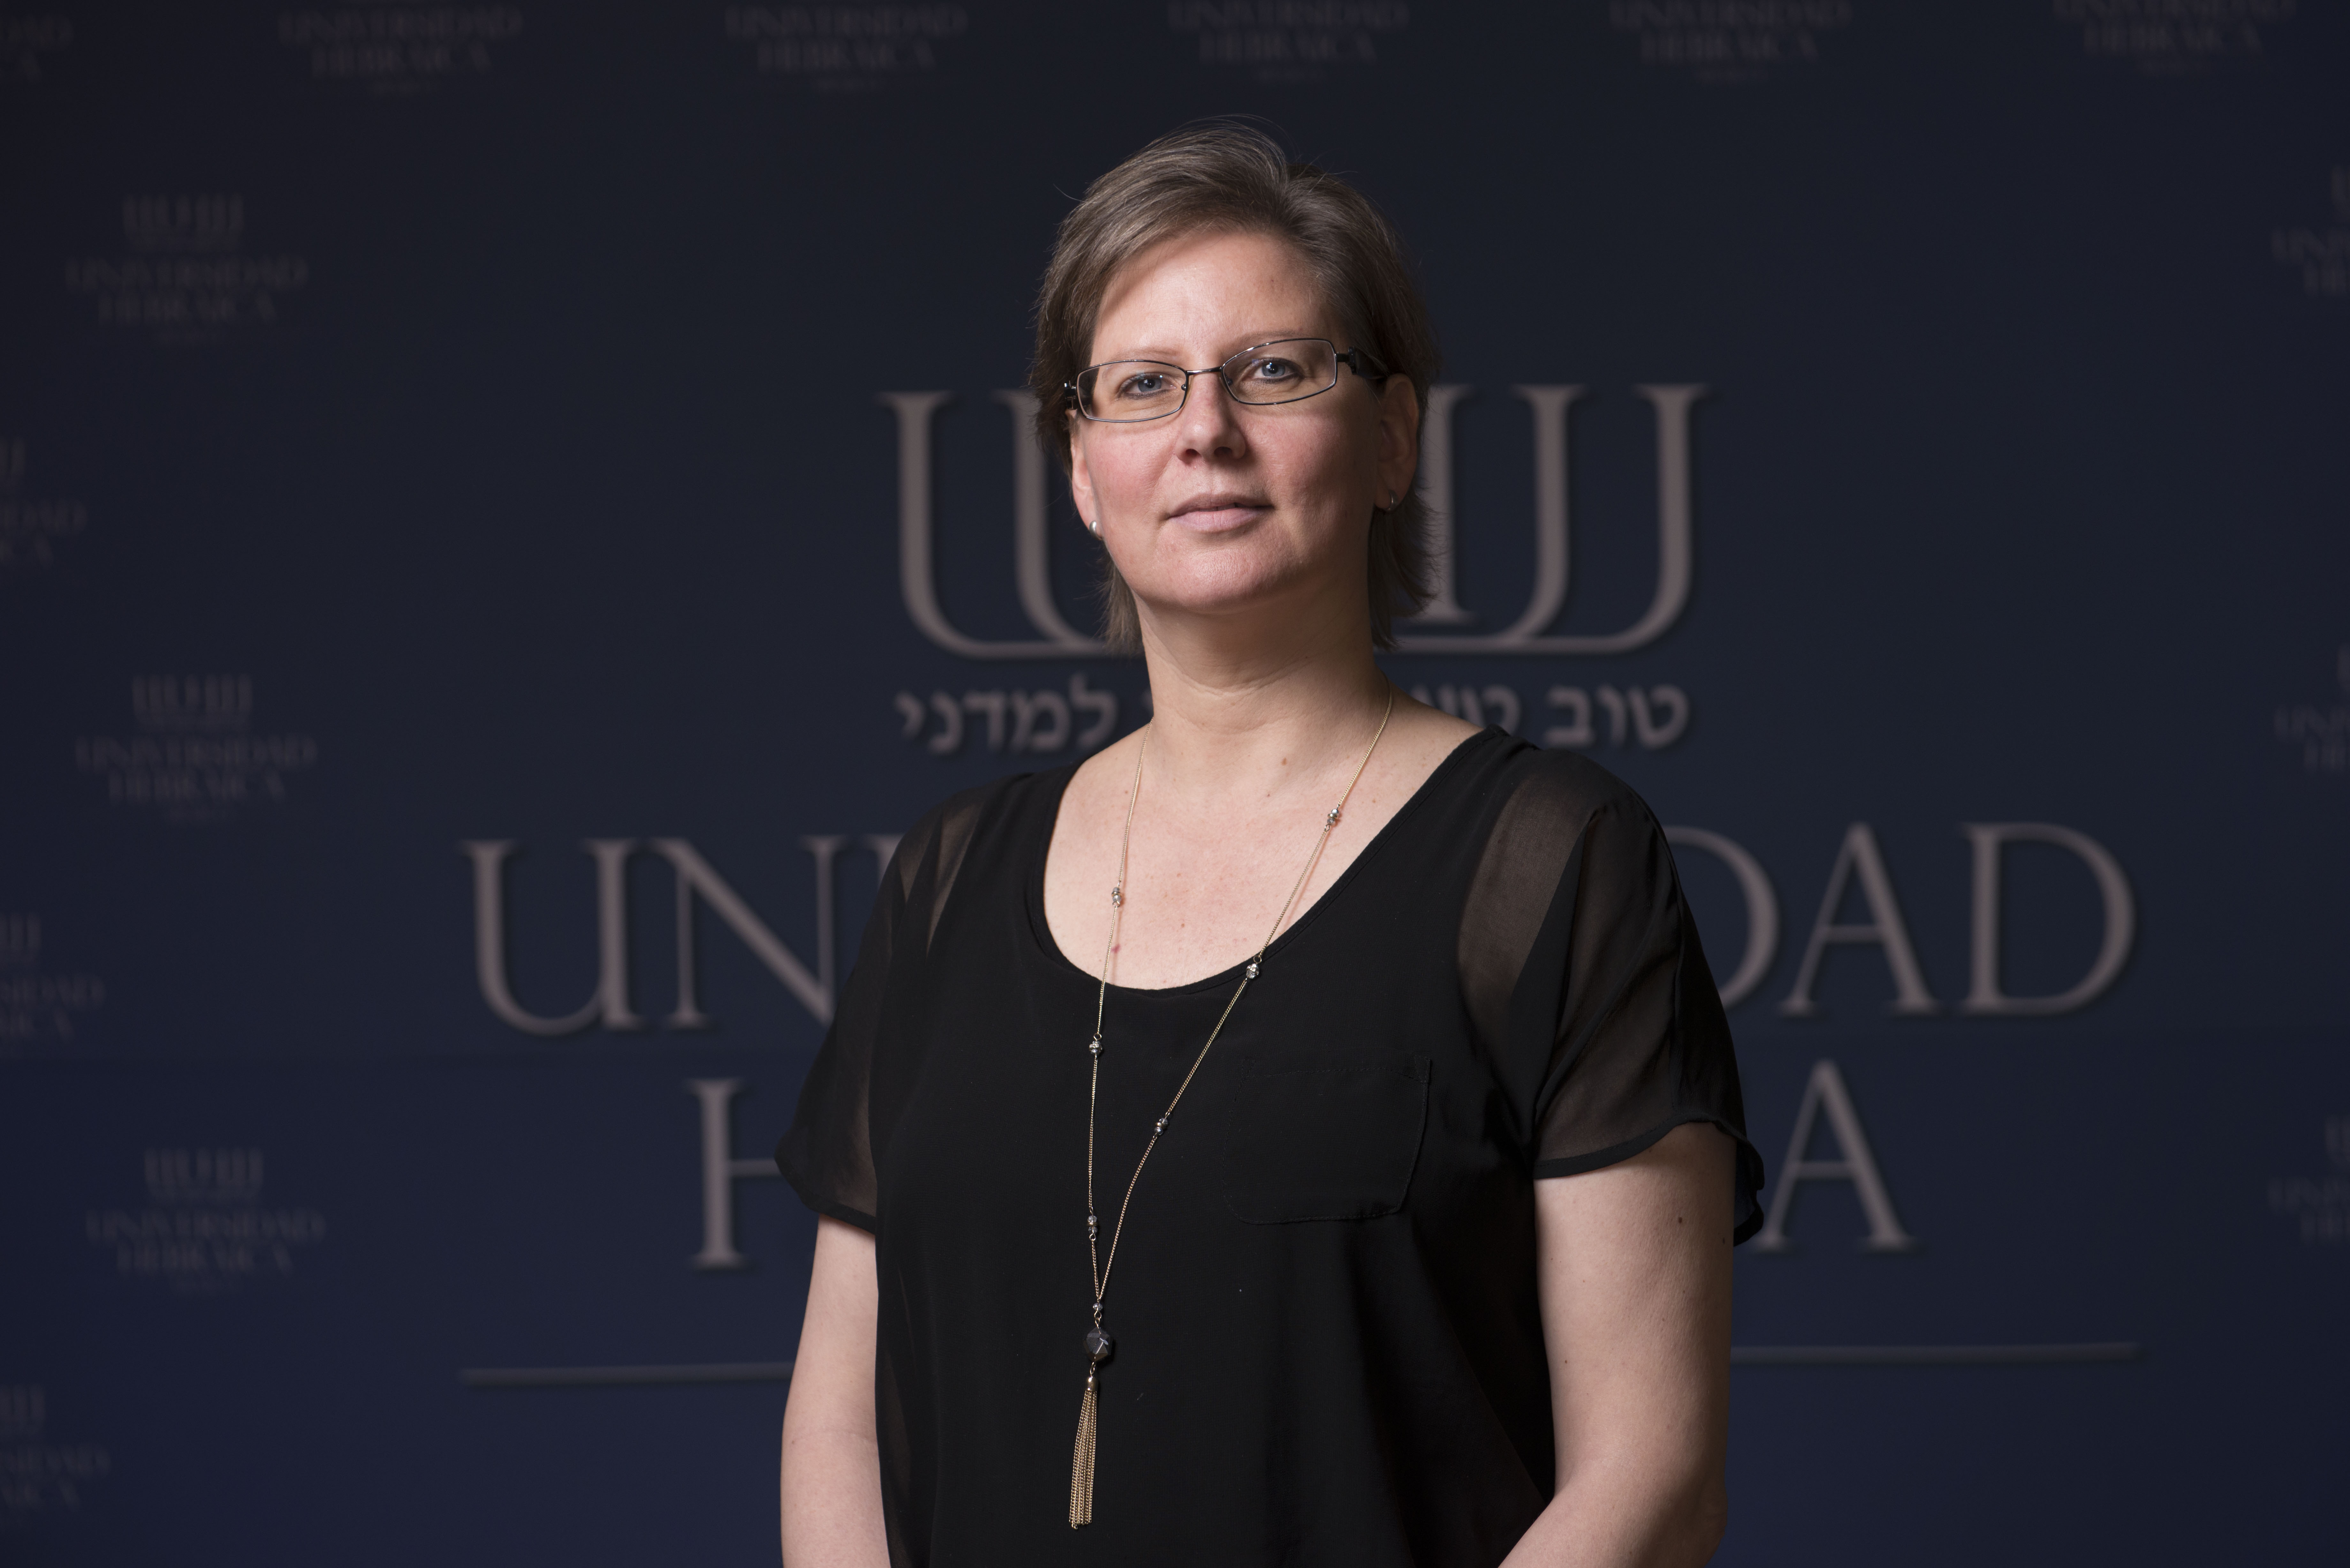 Entrevista a la Mtra. Dafna Saslavsky, Directora de Educación Judía y Hebreo de la UH